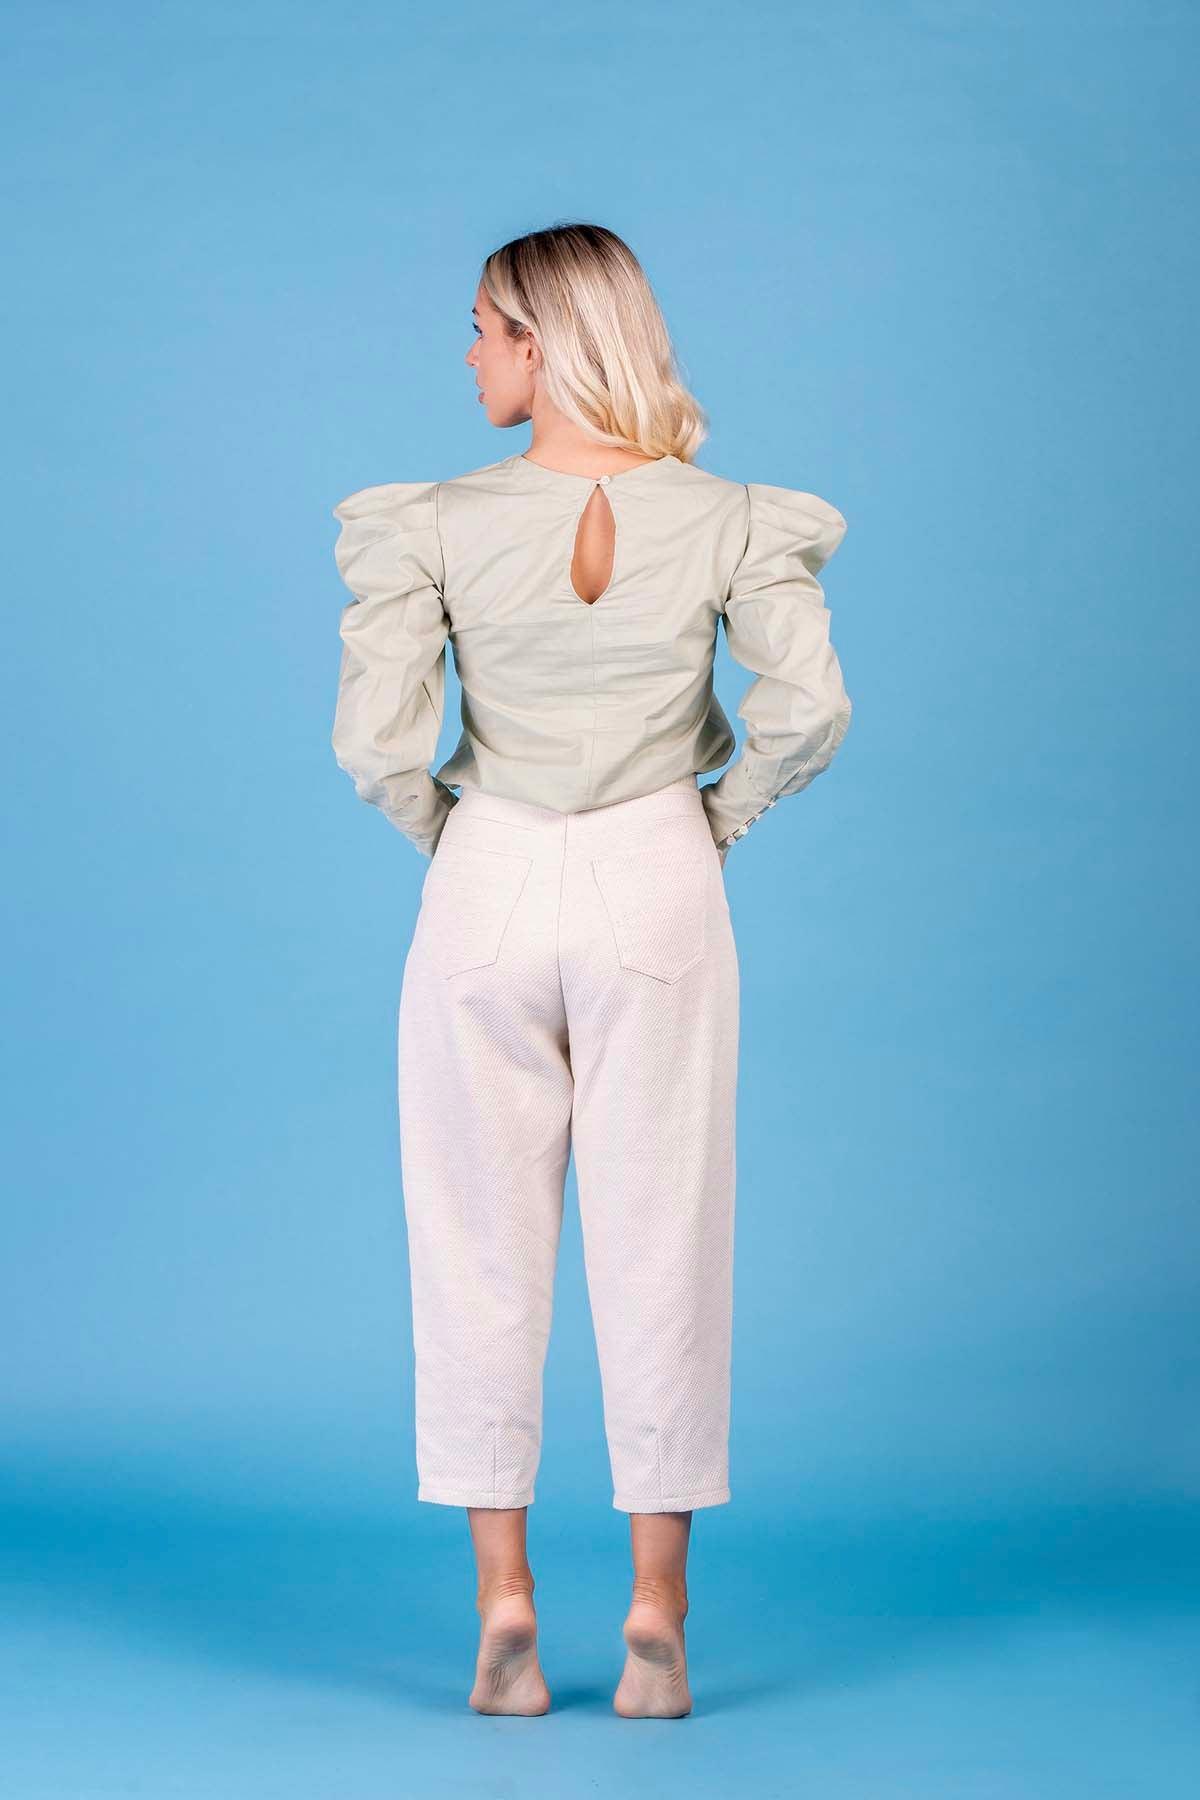 Pantalone Marrakech cotone lana lino canapa comodo vestibilita comoda brand malia lab moda etica abbigliamento sostenibile vestiti sostenibili donna in fibre naturali vista posteriore